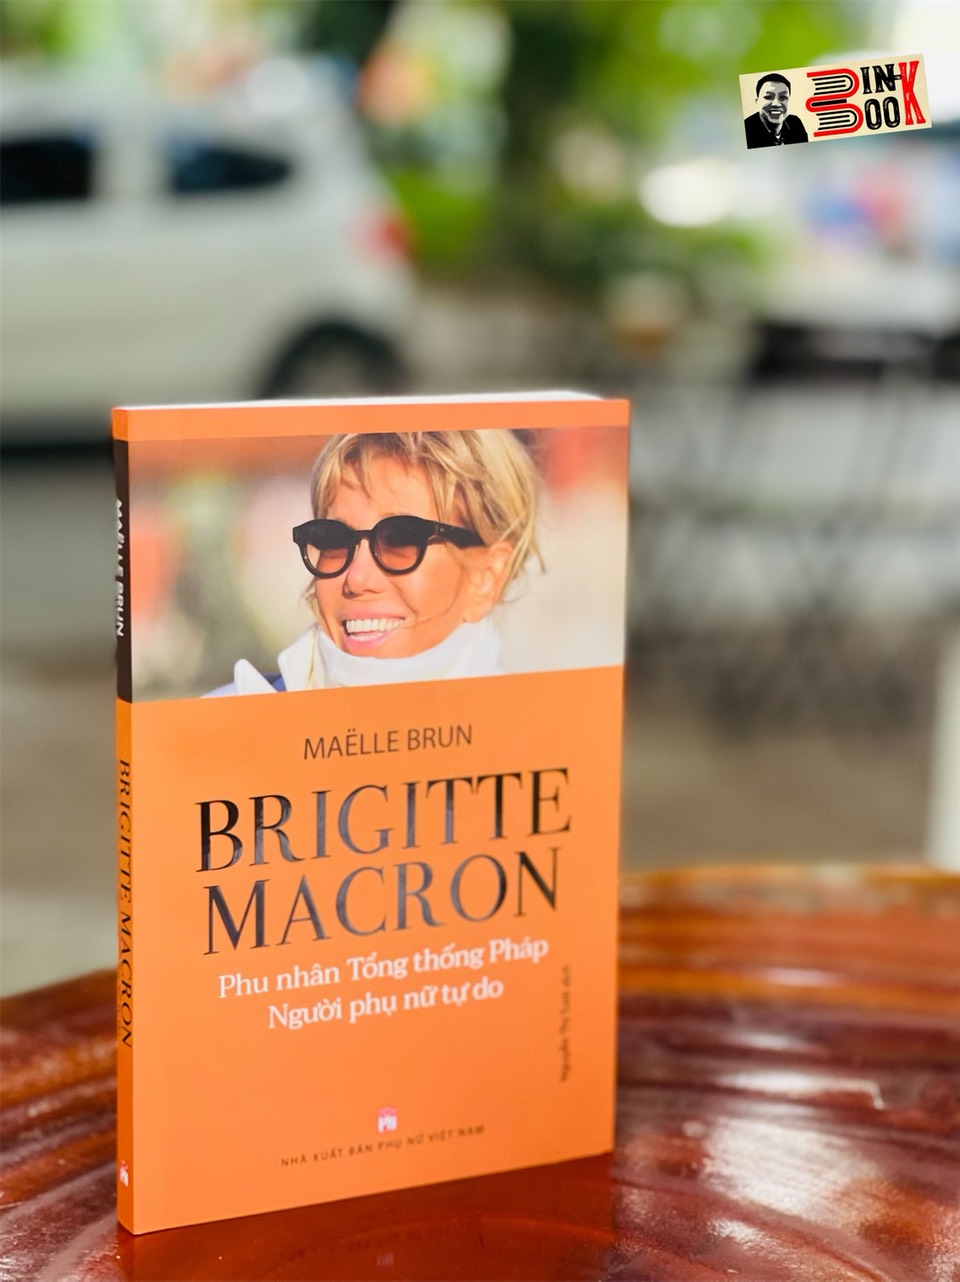 BRIGITTE MACRON - Phu nhân tổng thống Pháp - Người phụ nữ tự do - Maelle Brun - Nguyễn Thị Tươi dịch – Nxb Phụ Nữ Việt Nam (bìa mềm)